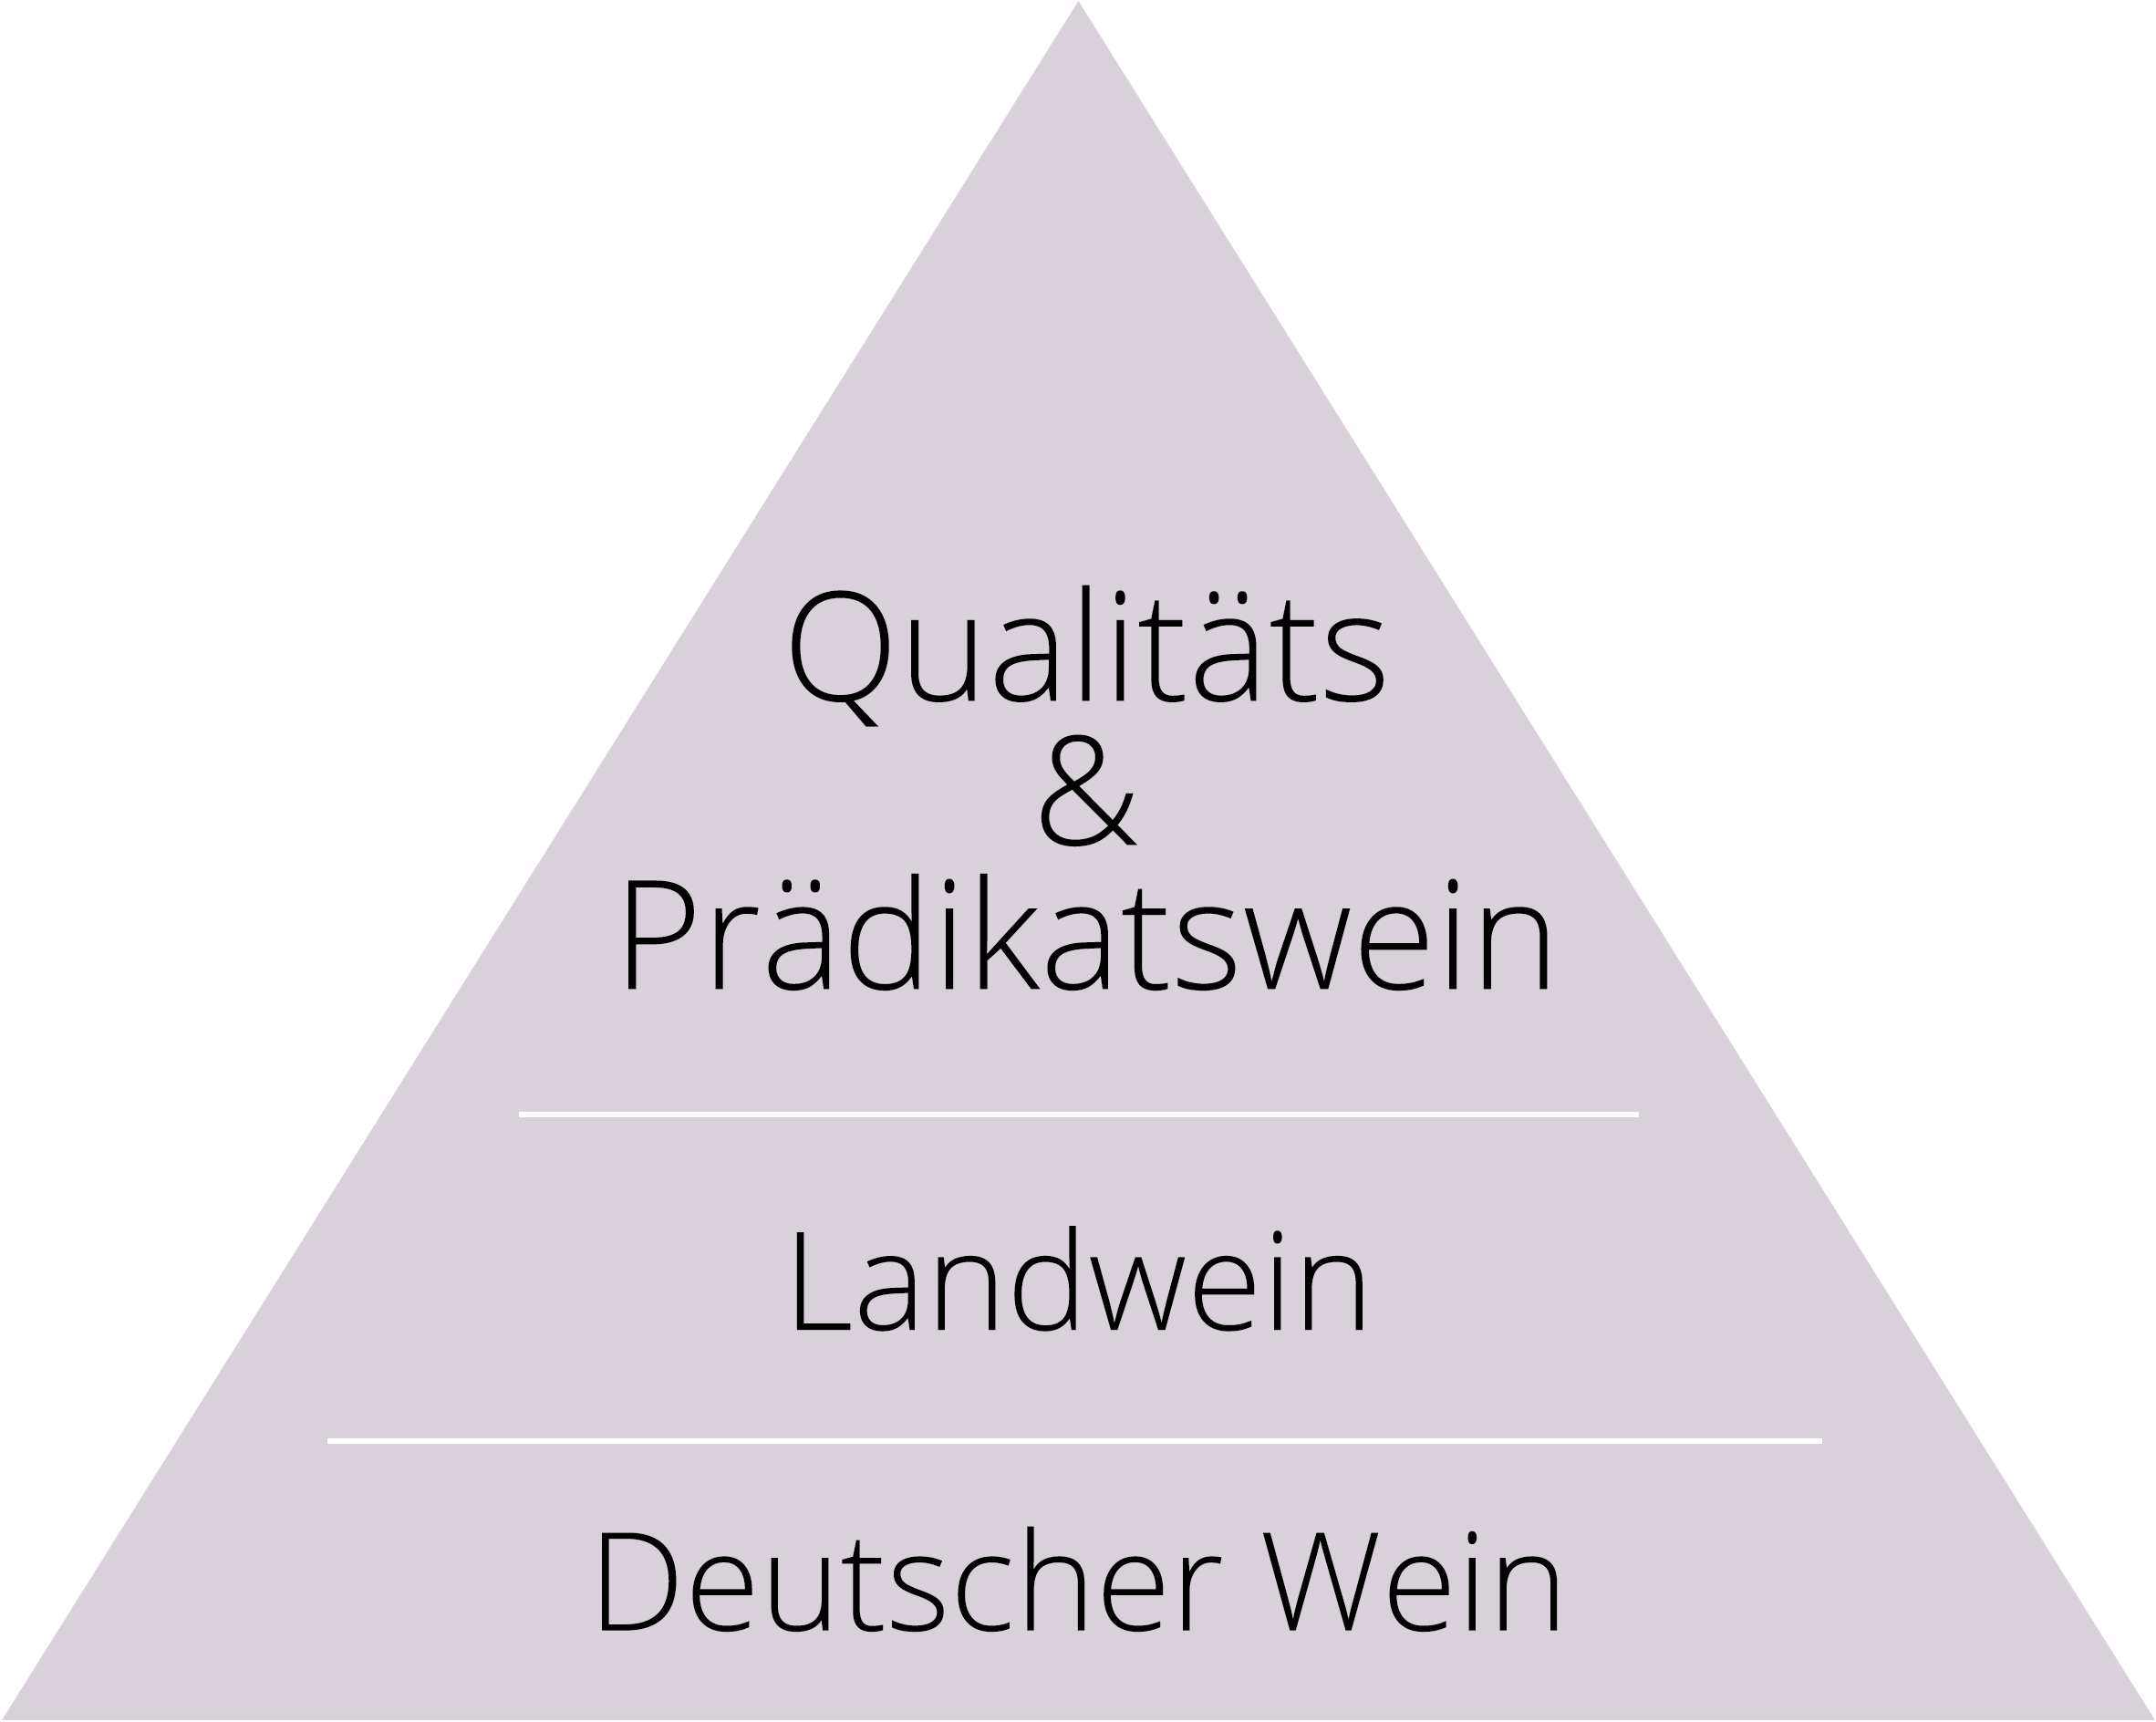 Qualitätspyramide